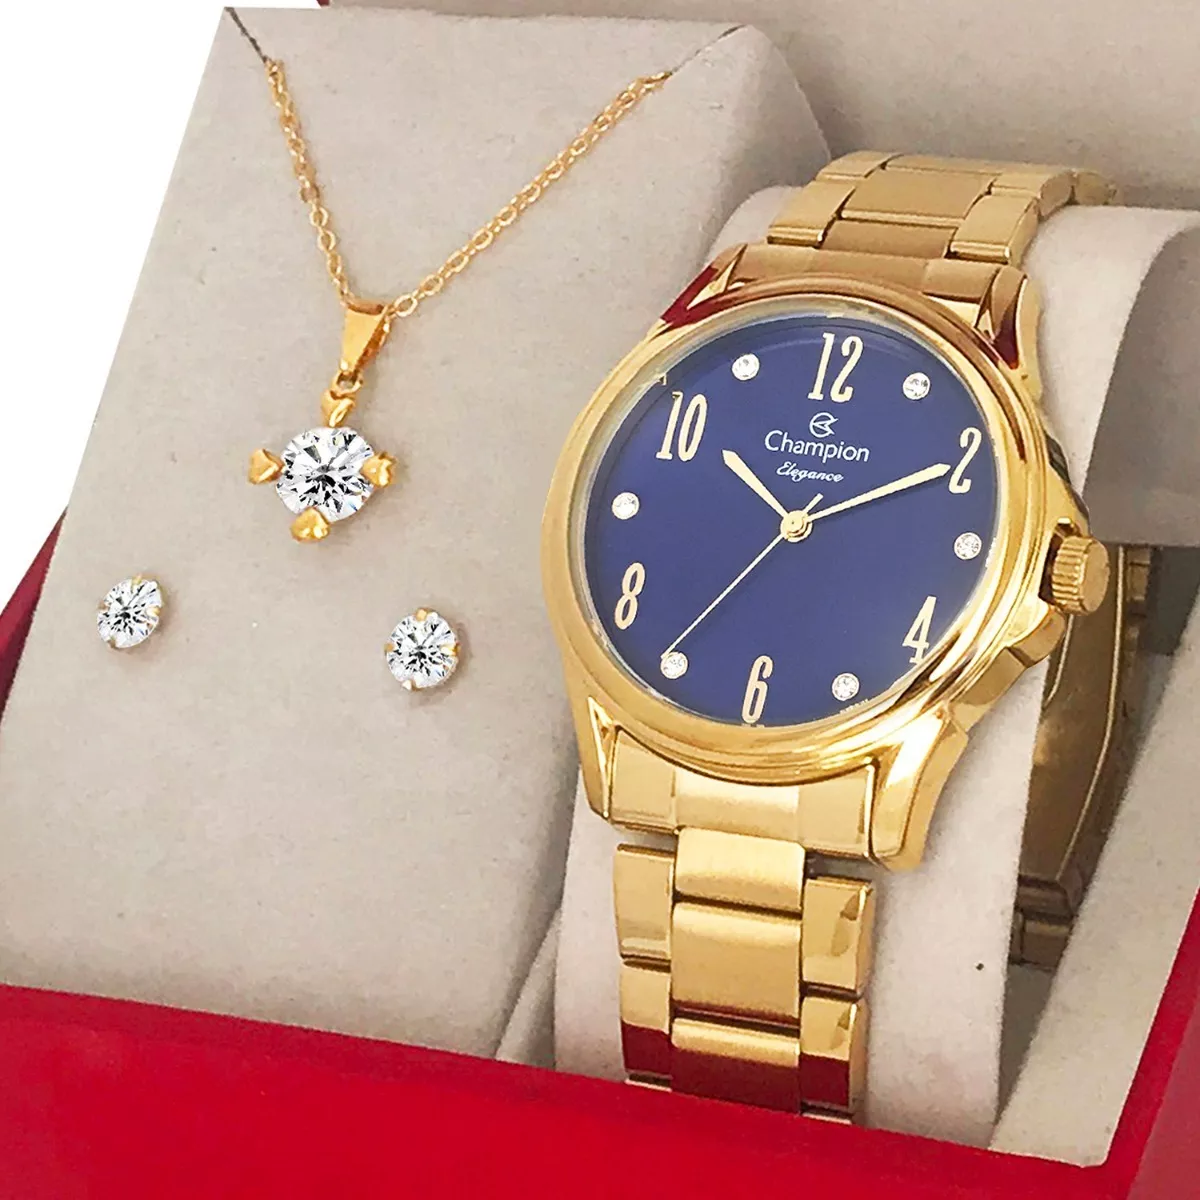 Relógio Champion Feminino Dourado Ouro 18k + Colar E Brincos